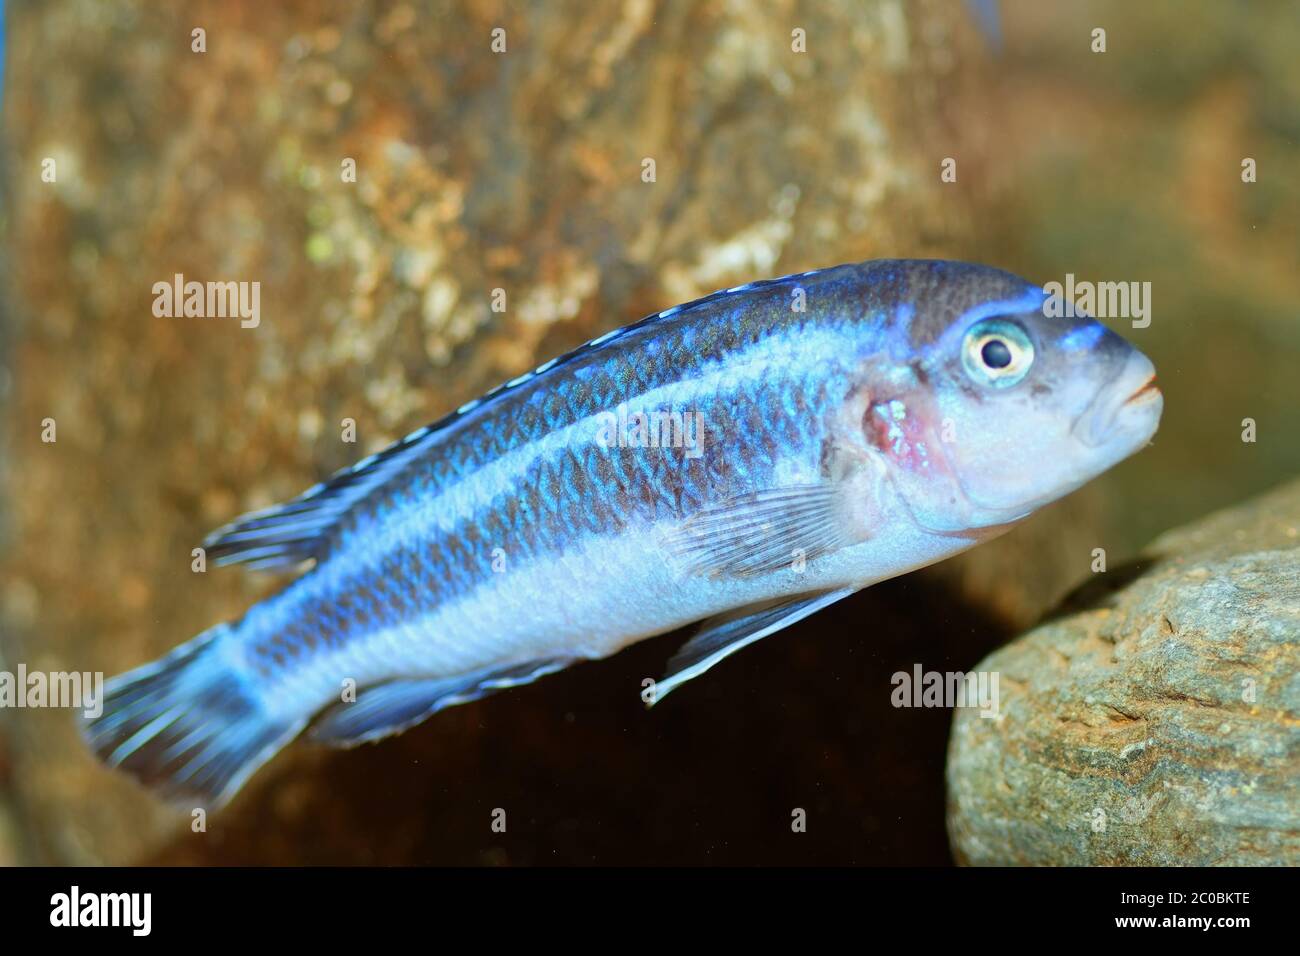 Melanochromis fish Stock Photo